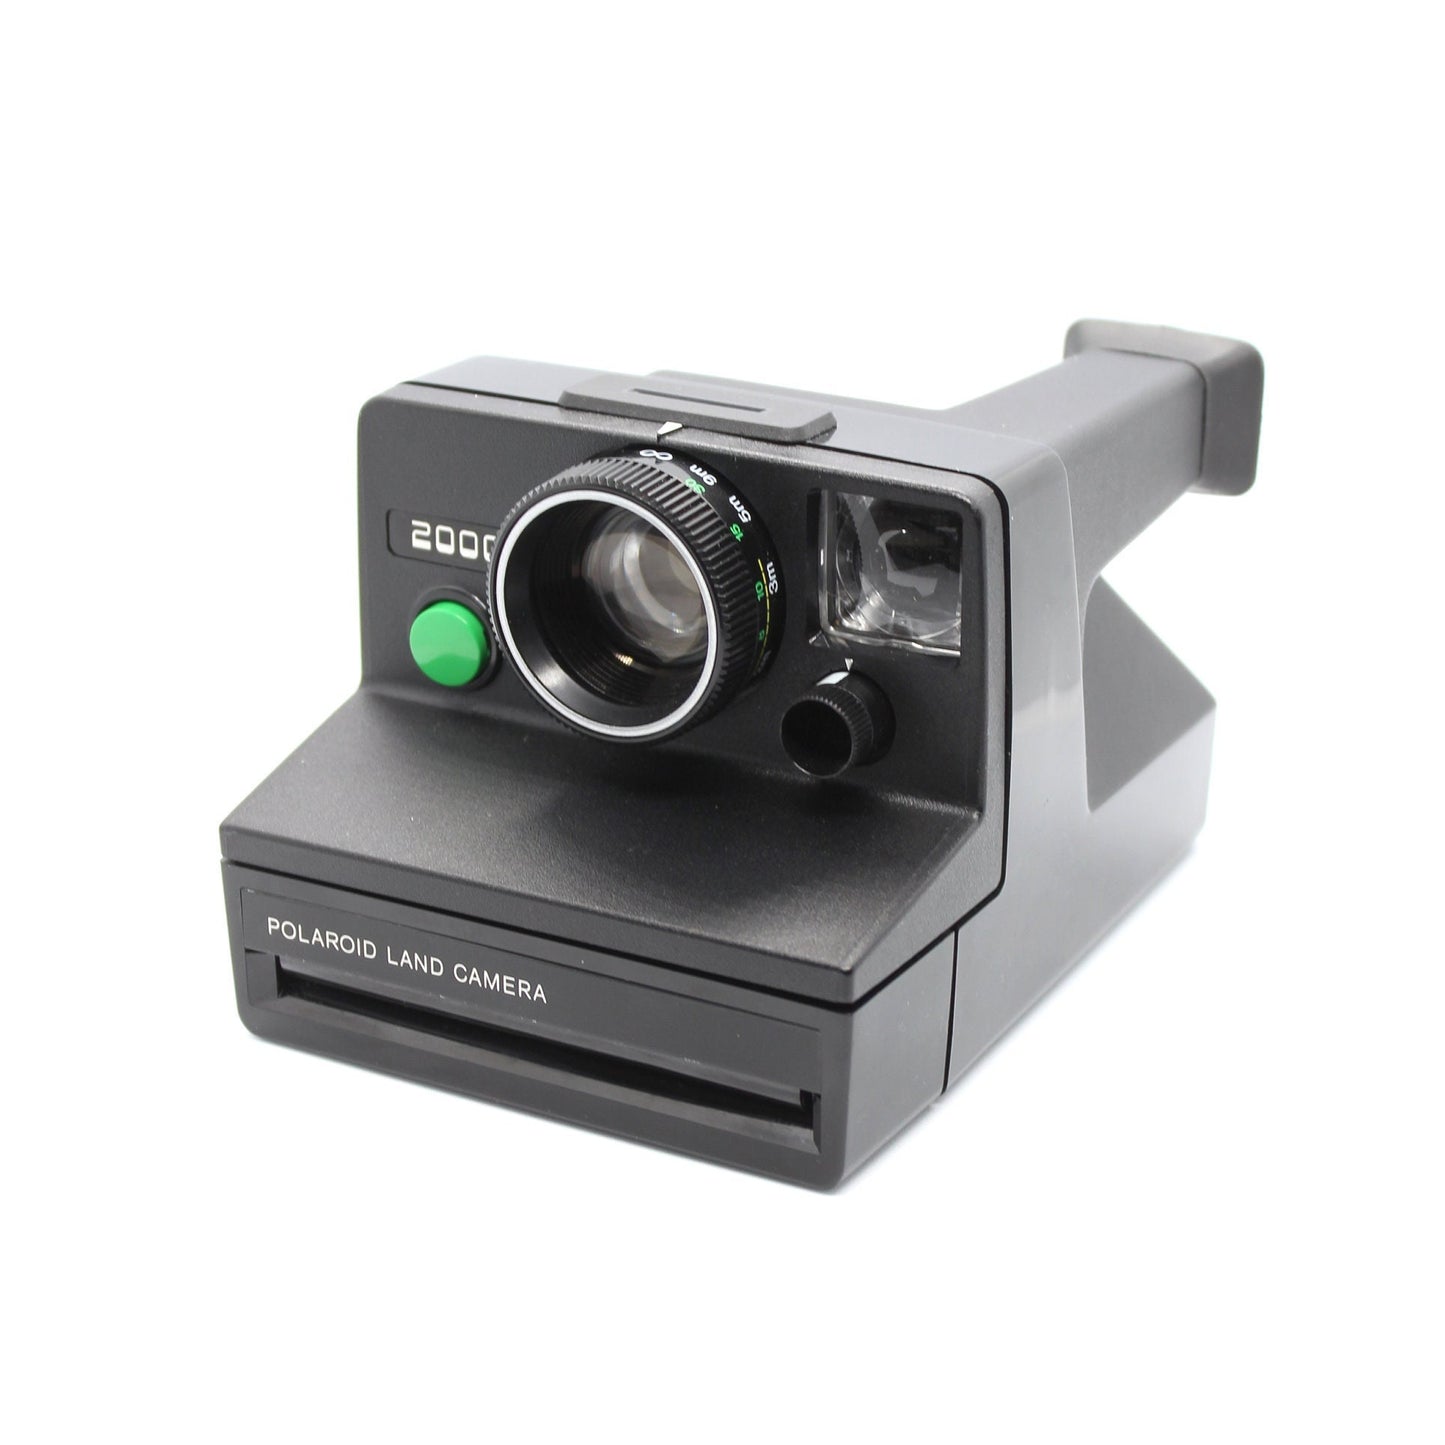 Polaroid 2000 Land Camera - Green Button